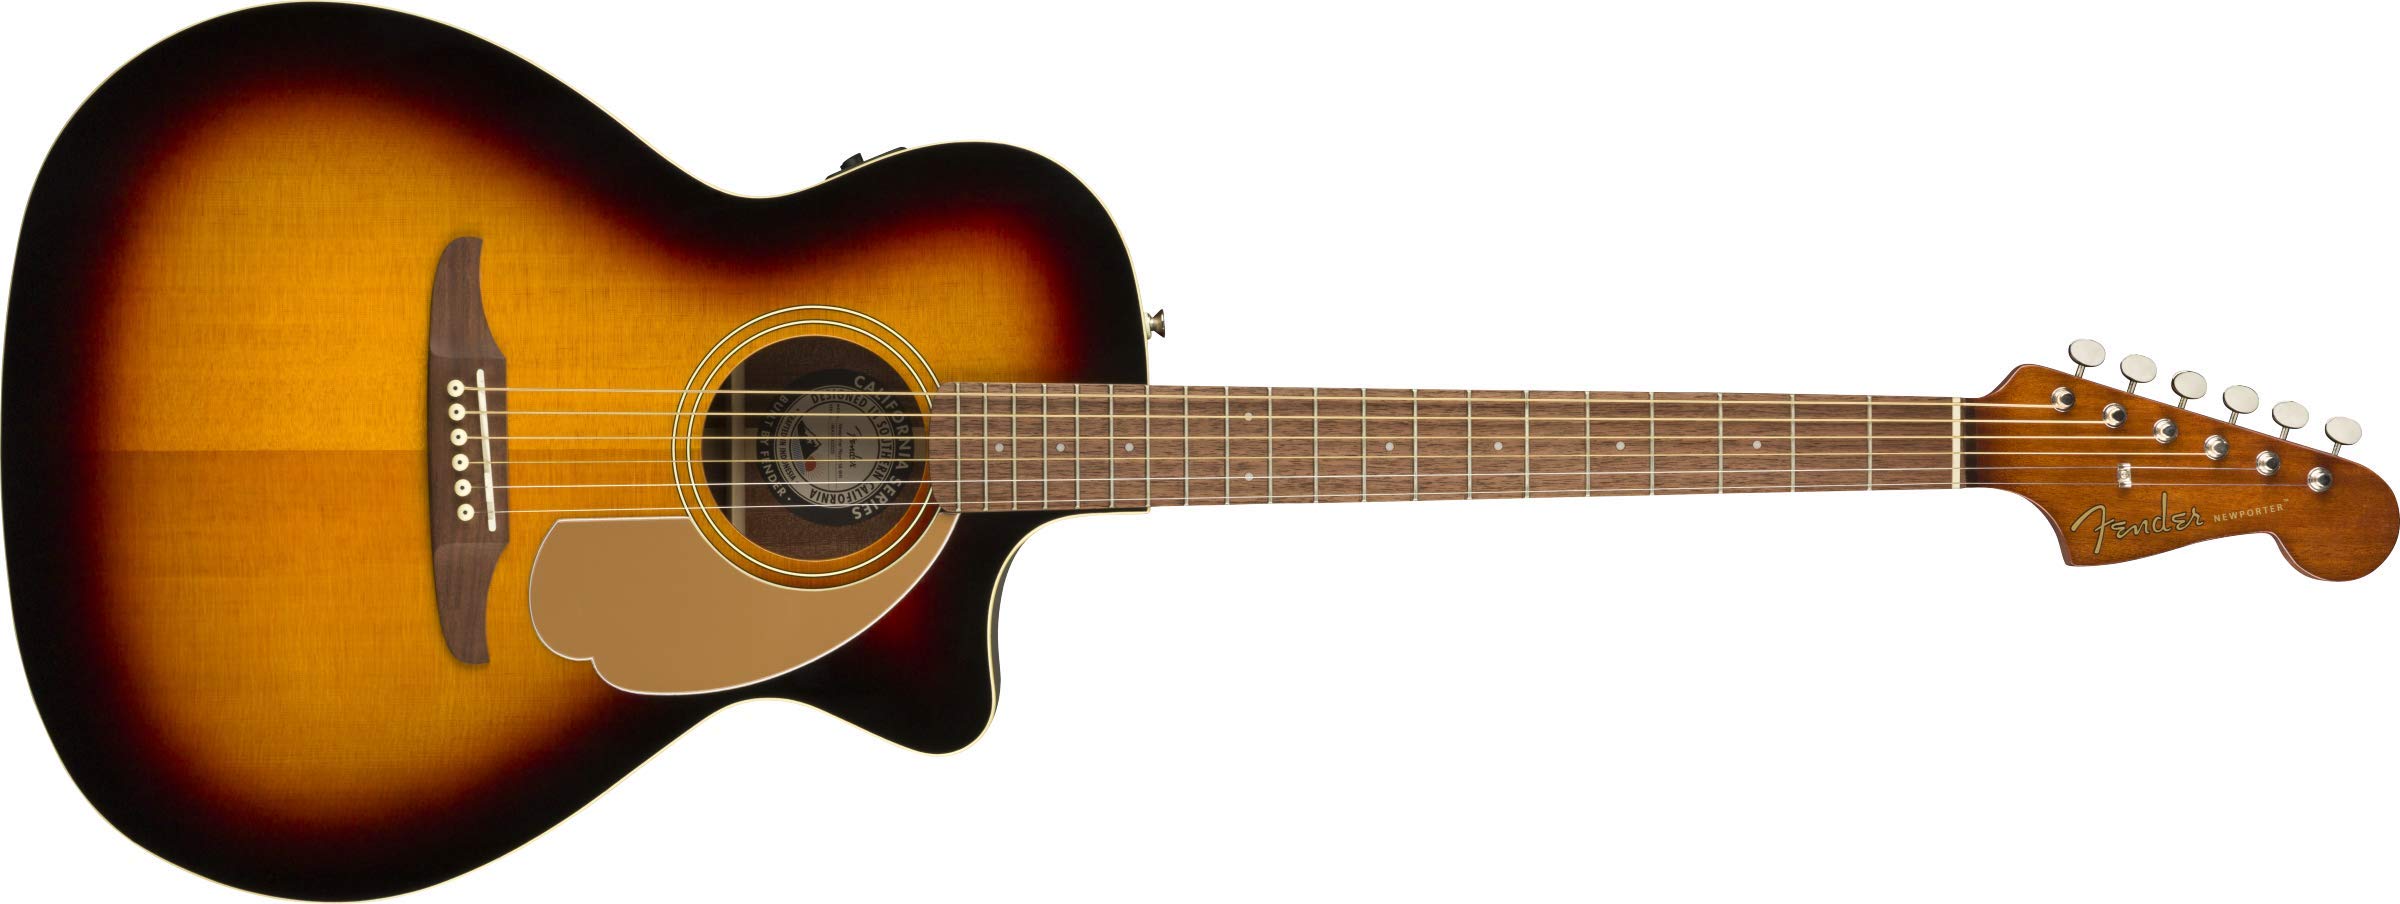 Fender Newporter Player Acoustic Guitar - Sunburst